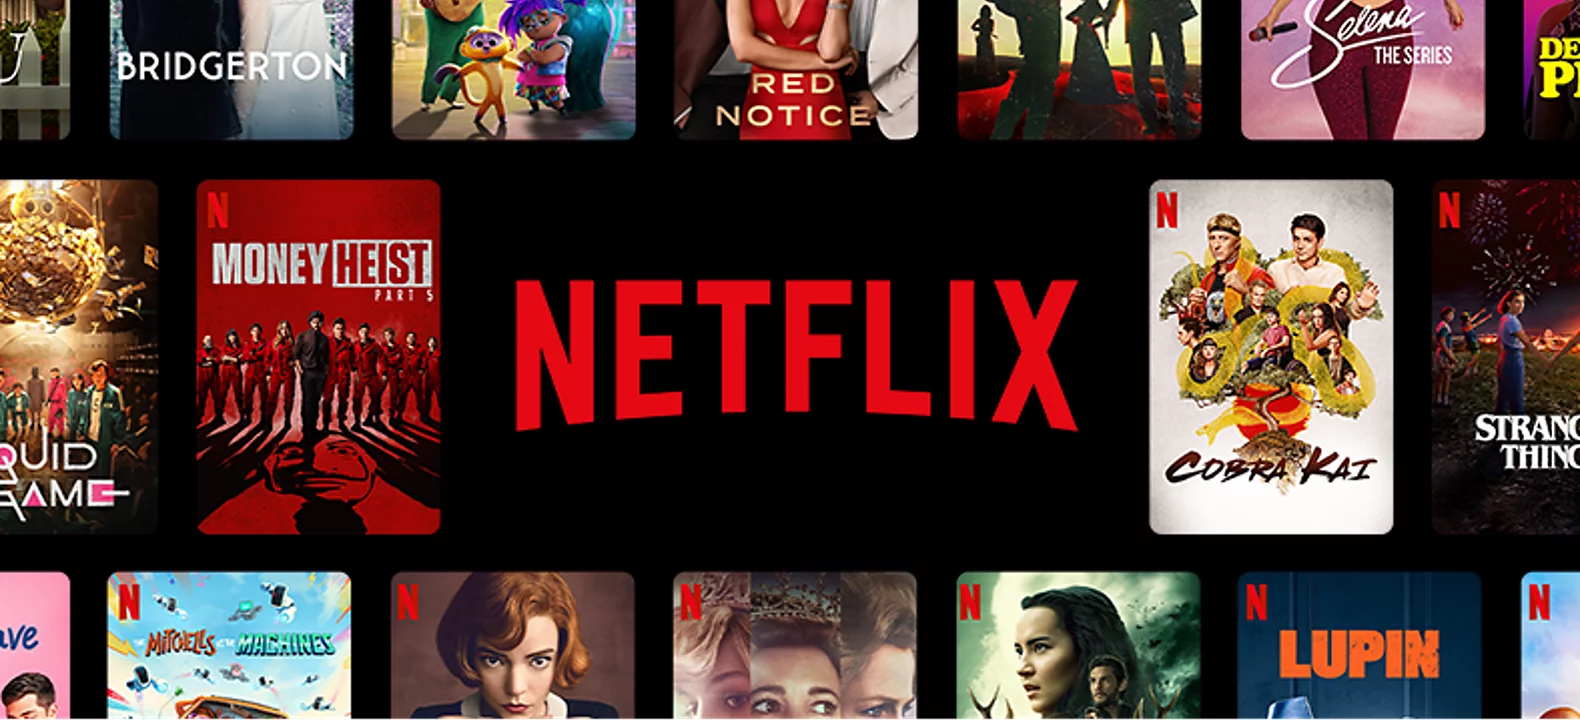 Netflix pretplata 1 godina filmovi besplatno gledanje online jeftino cena